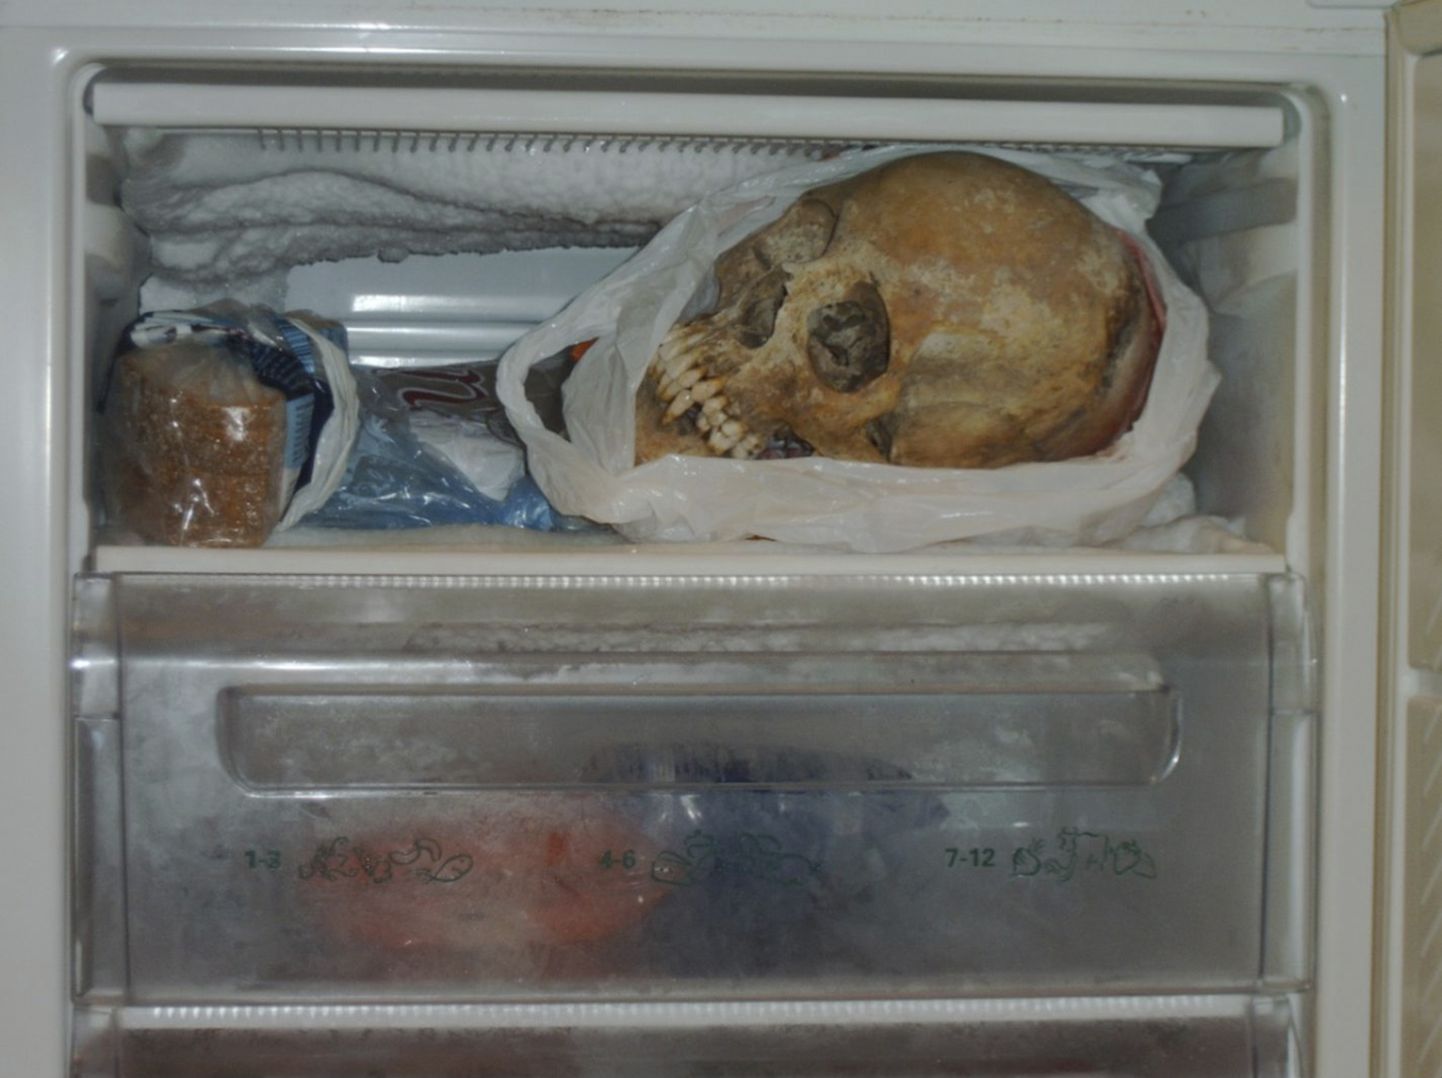 Õõvastavaid leide on tehtud ka varem. Pildil kujutatu leiti 2012. aastal Göteborgis elava 37-aastase naise külmikust.